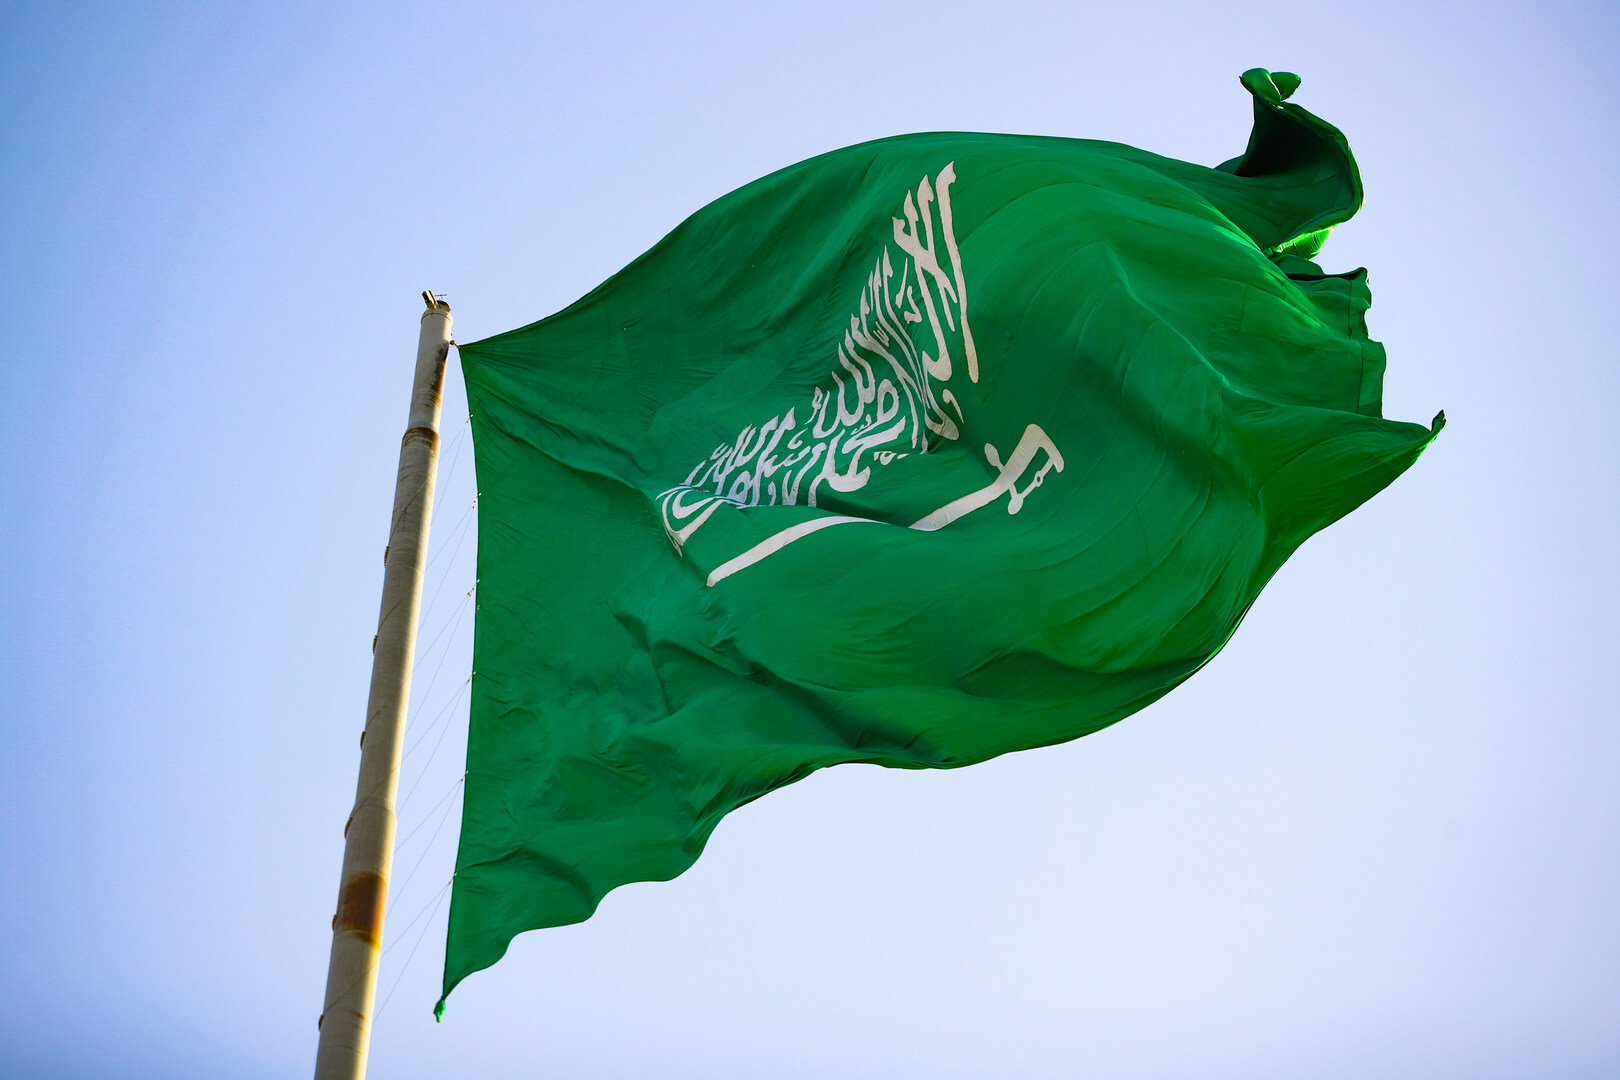 السعودية تطالب مجلس حقوق الإنسان بمصادر موثوقة